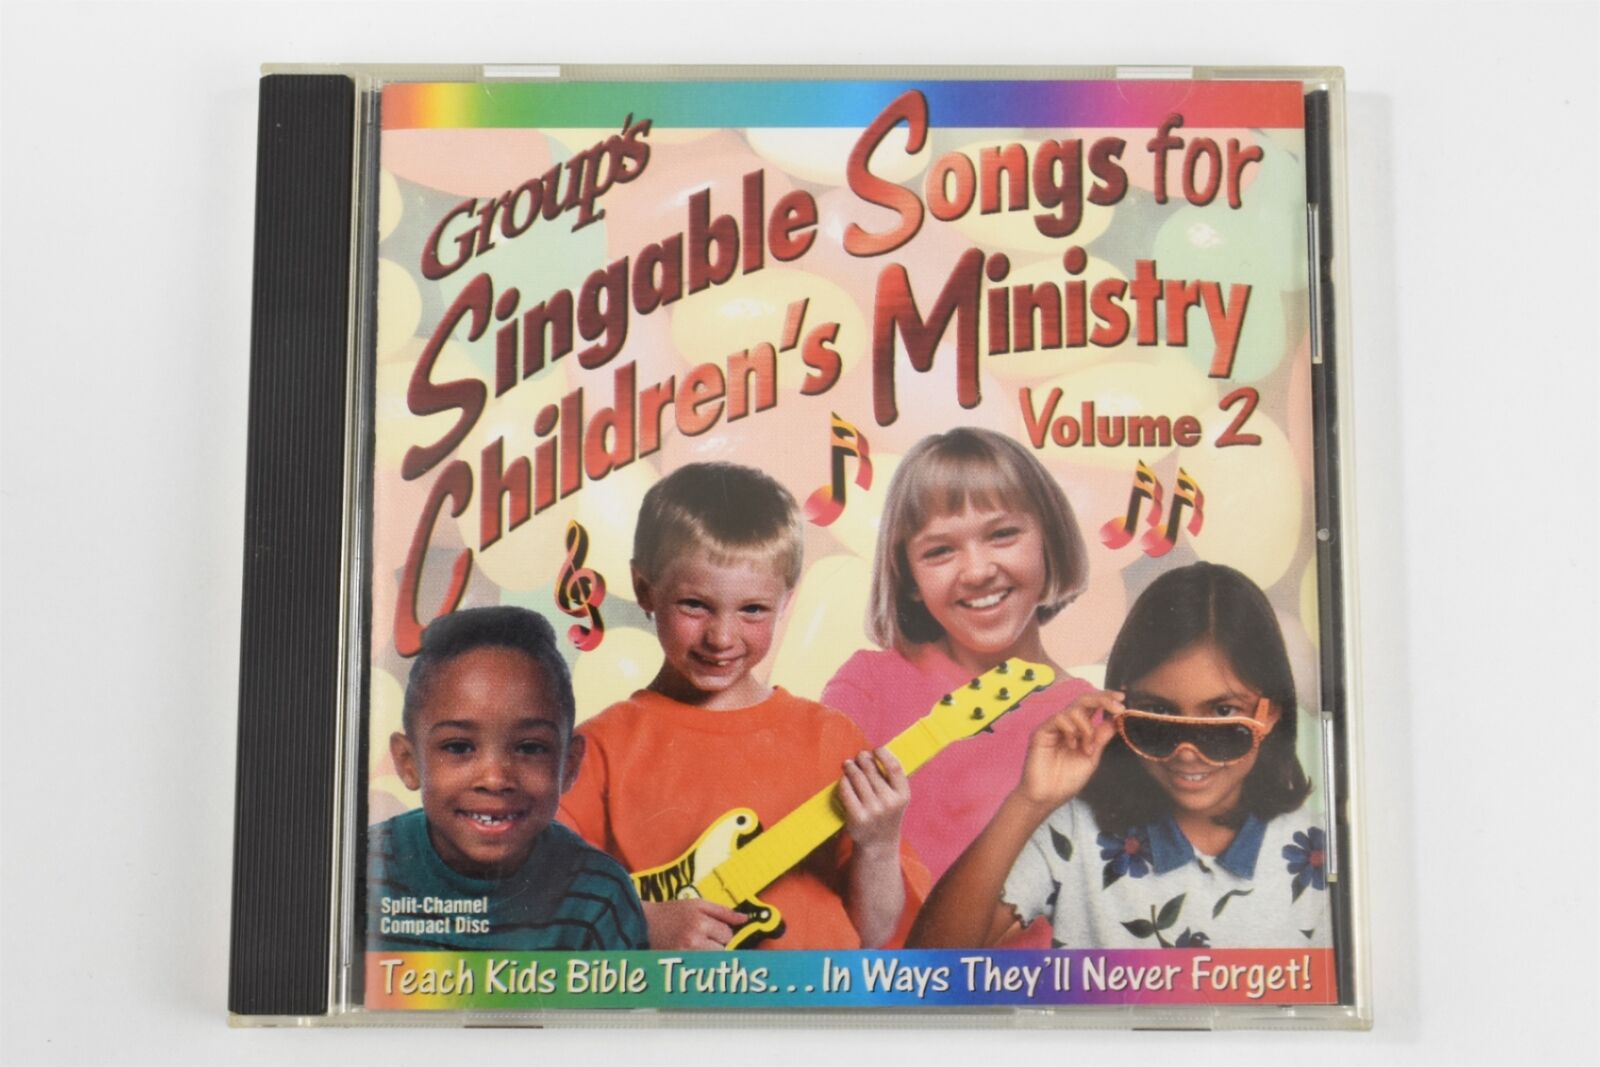 Group's Singable Songs for Children's Ministry Volume 2 (CD, 1995, Religious)